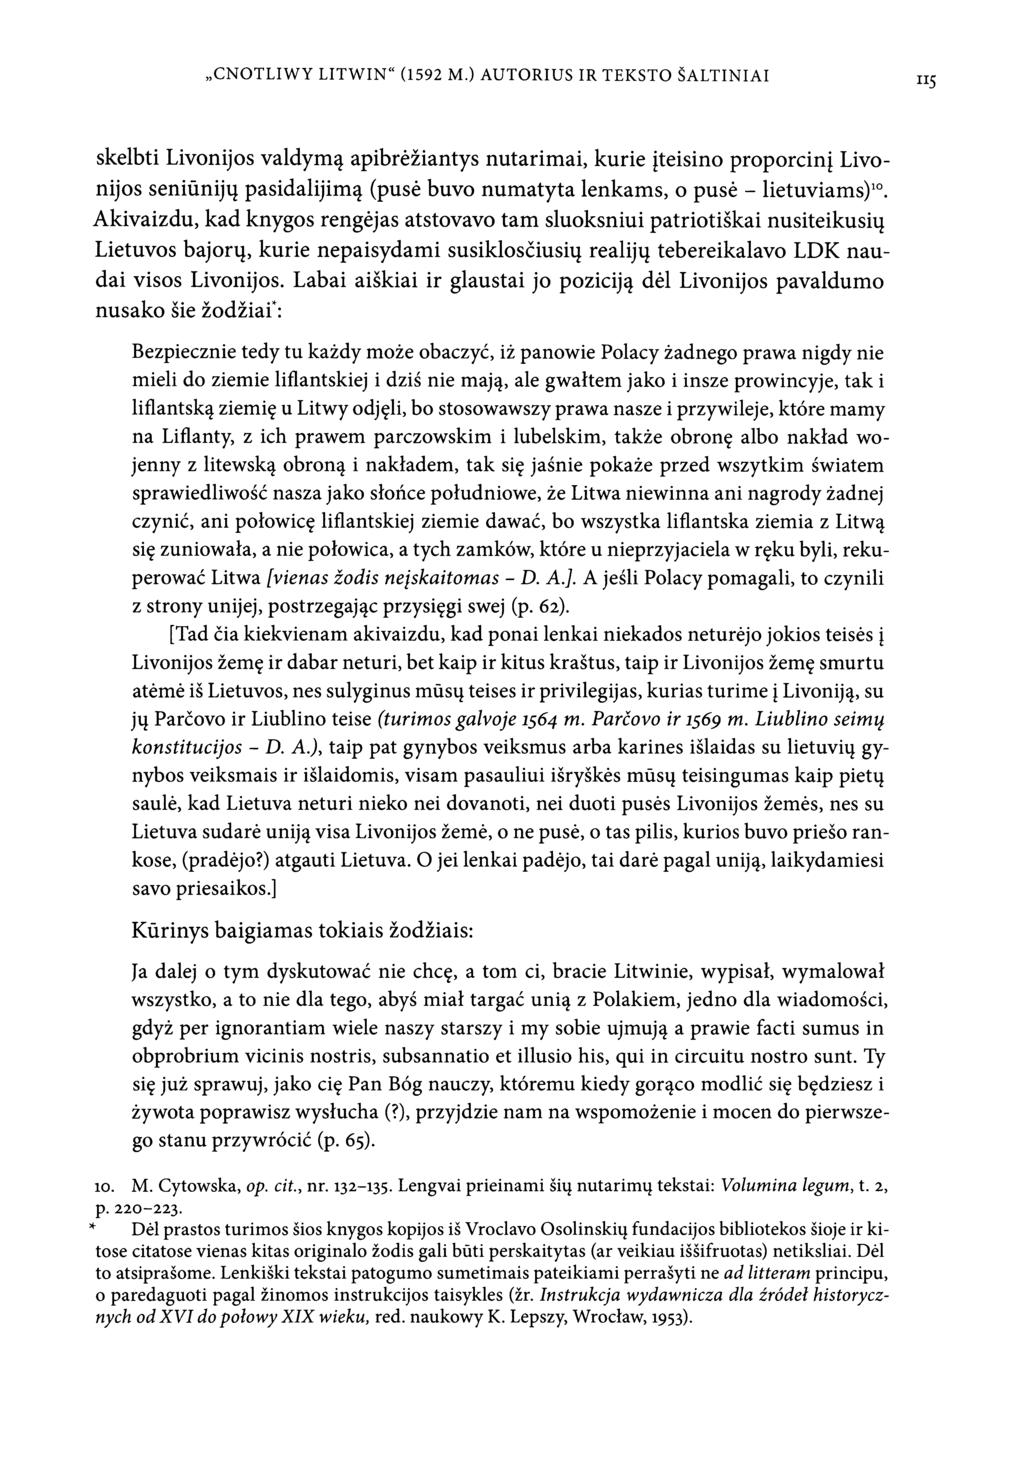 CNOTLIWY LITWIN" (1592 M.) AUTORIUS IR TEKSTO SALTINIAI 115 skelbti Livonijos valdym? apibreziantys nutarimai, kurie iteisino proporcini Livonijos senidniju pasidalijim?